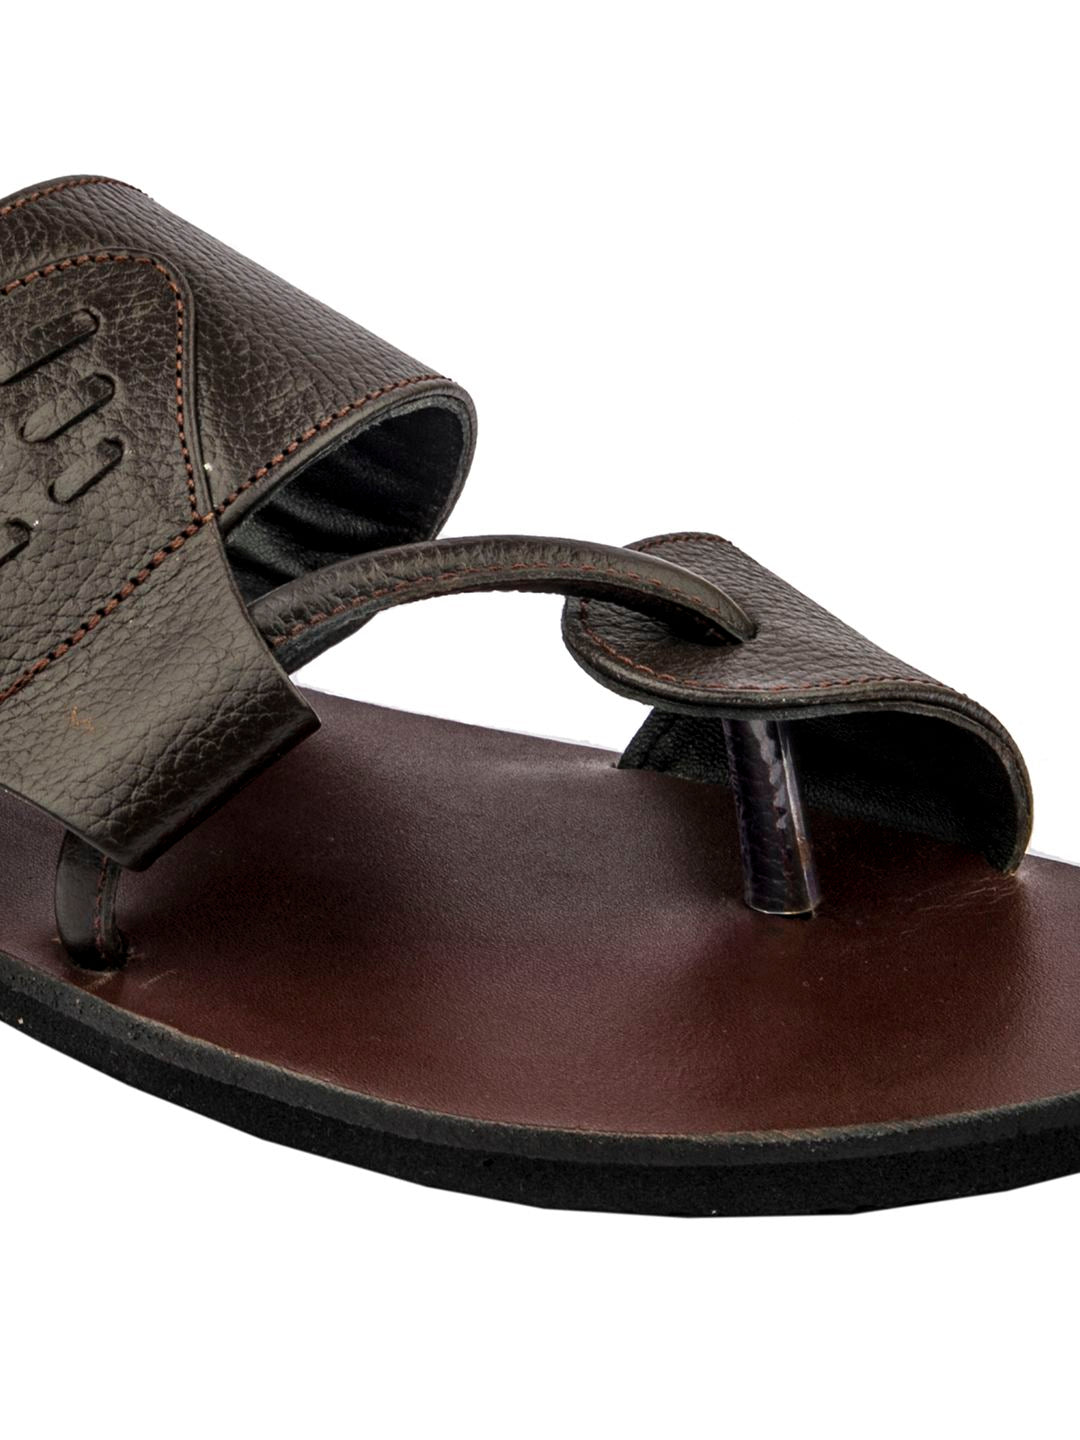 Designer Comfort: Handmade Brown Leather Sandals for Men